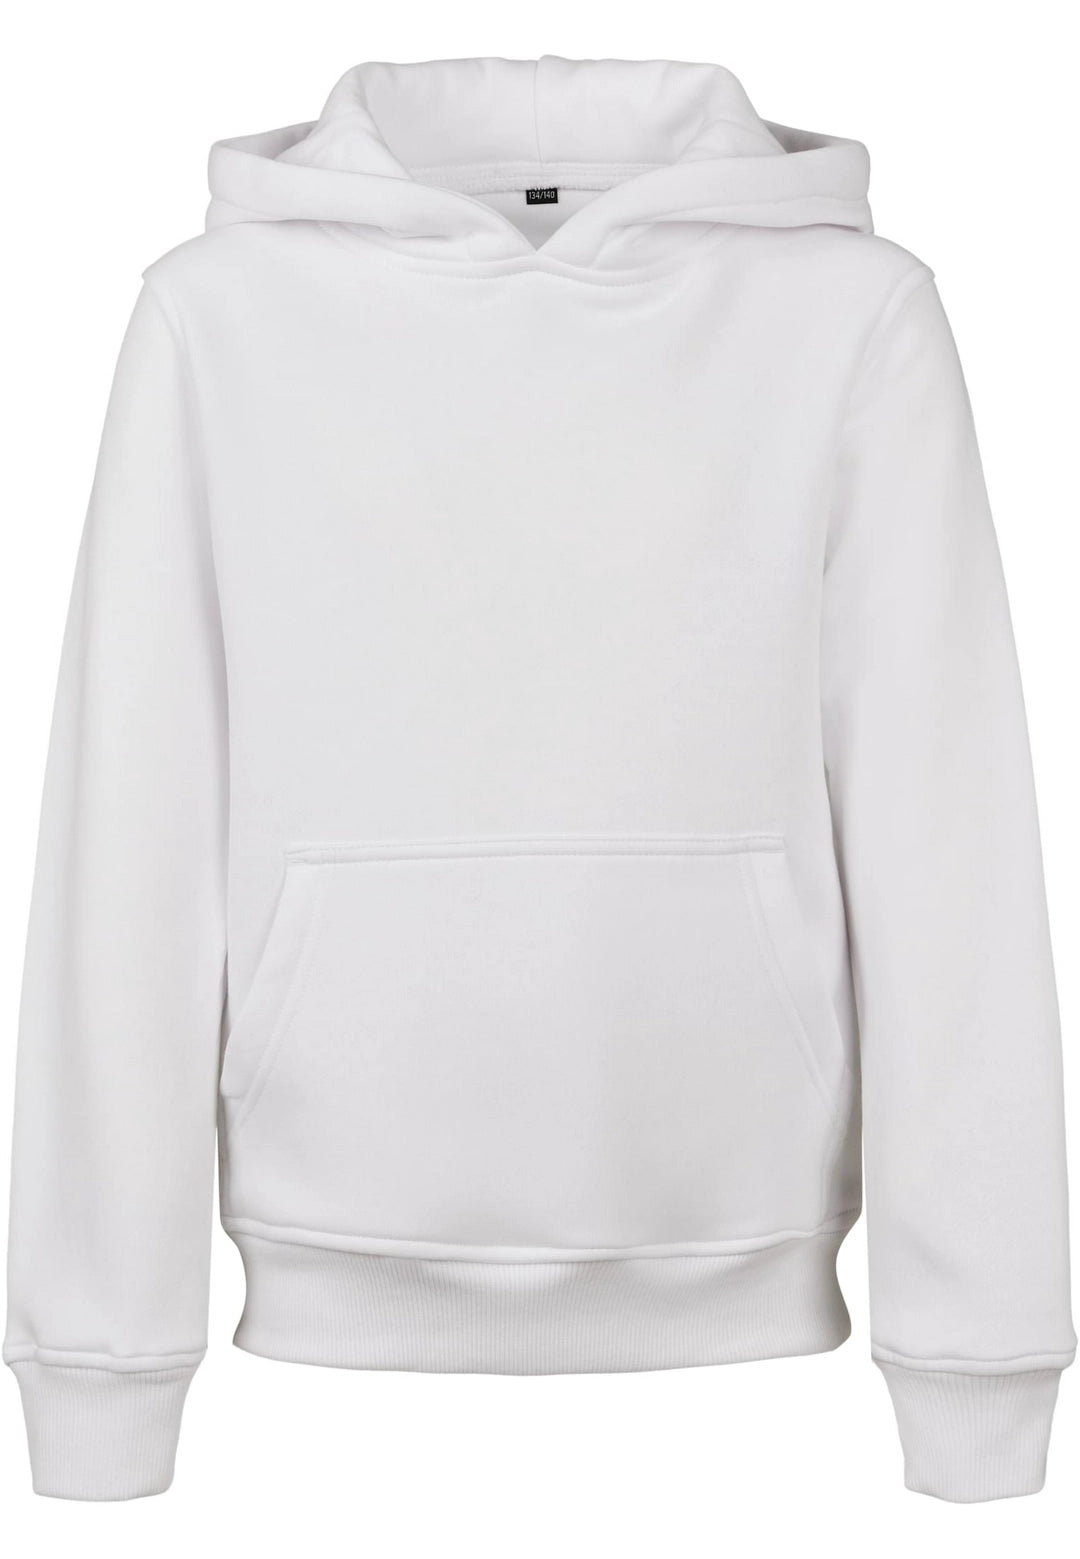 Kids basic hoodie - White - 9/10YEARS-W9-10